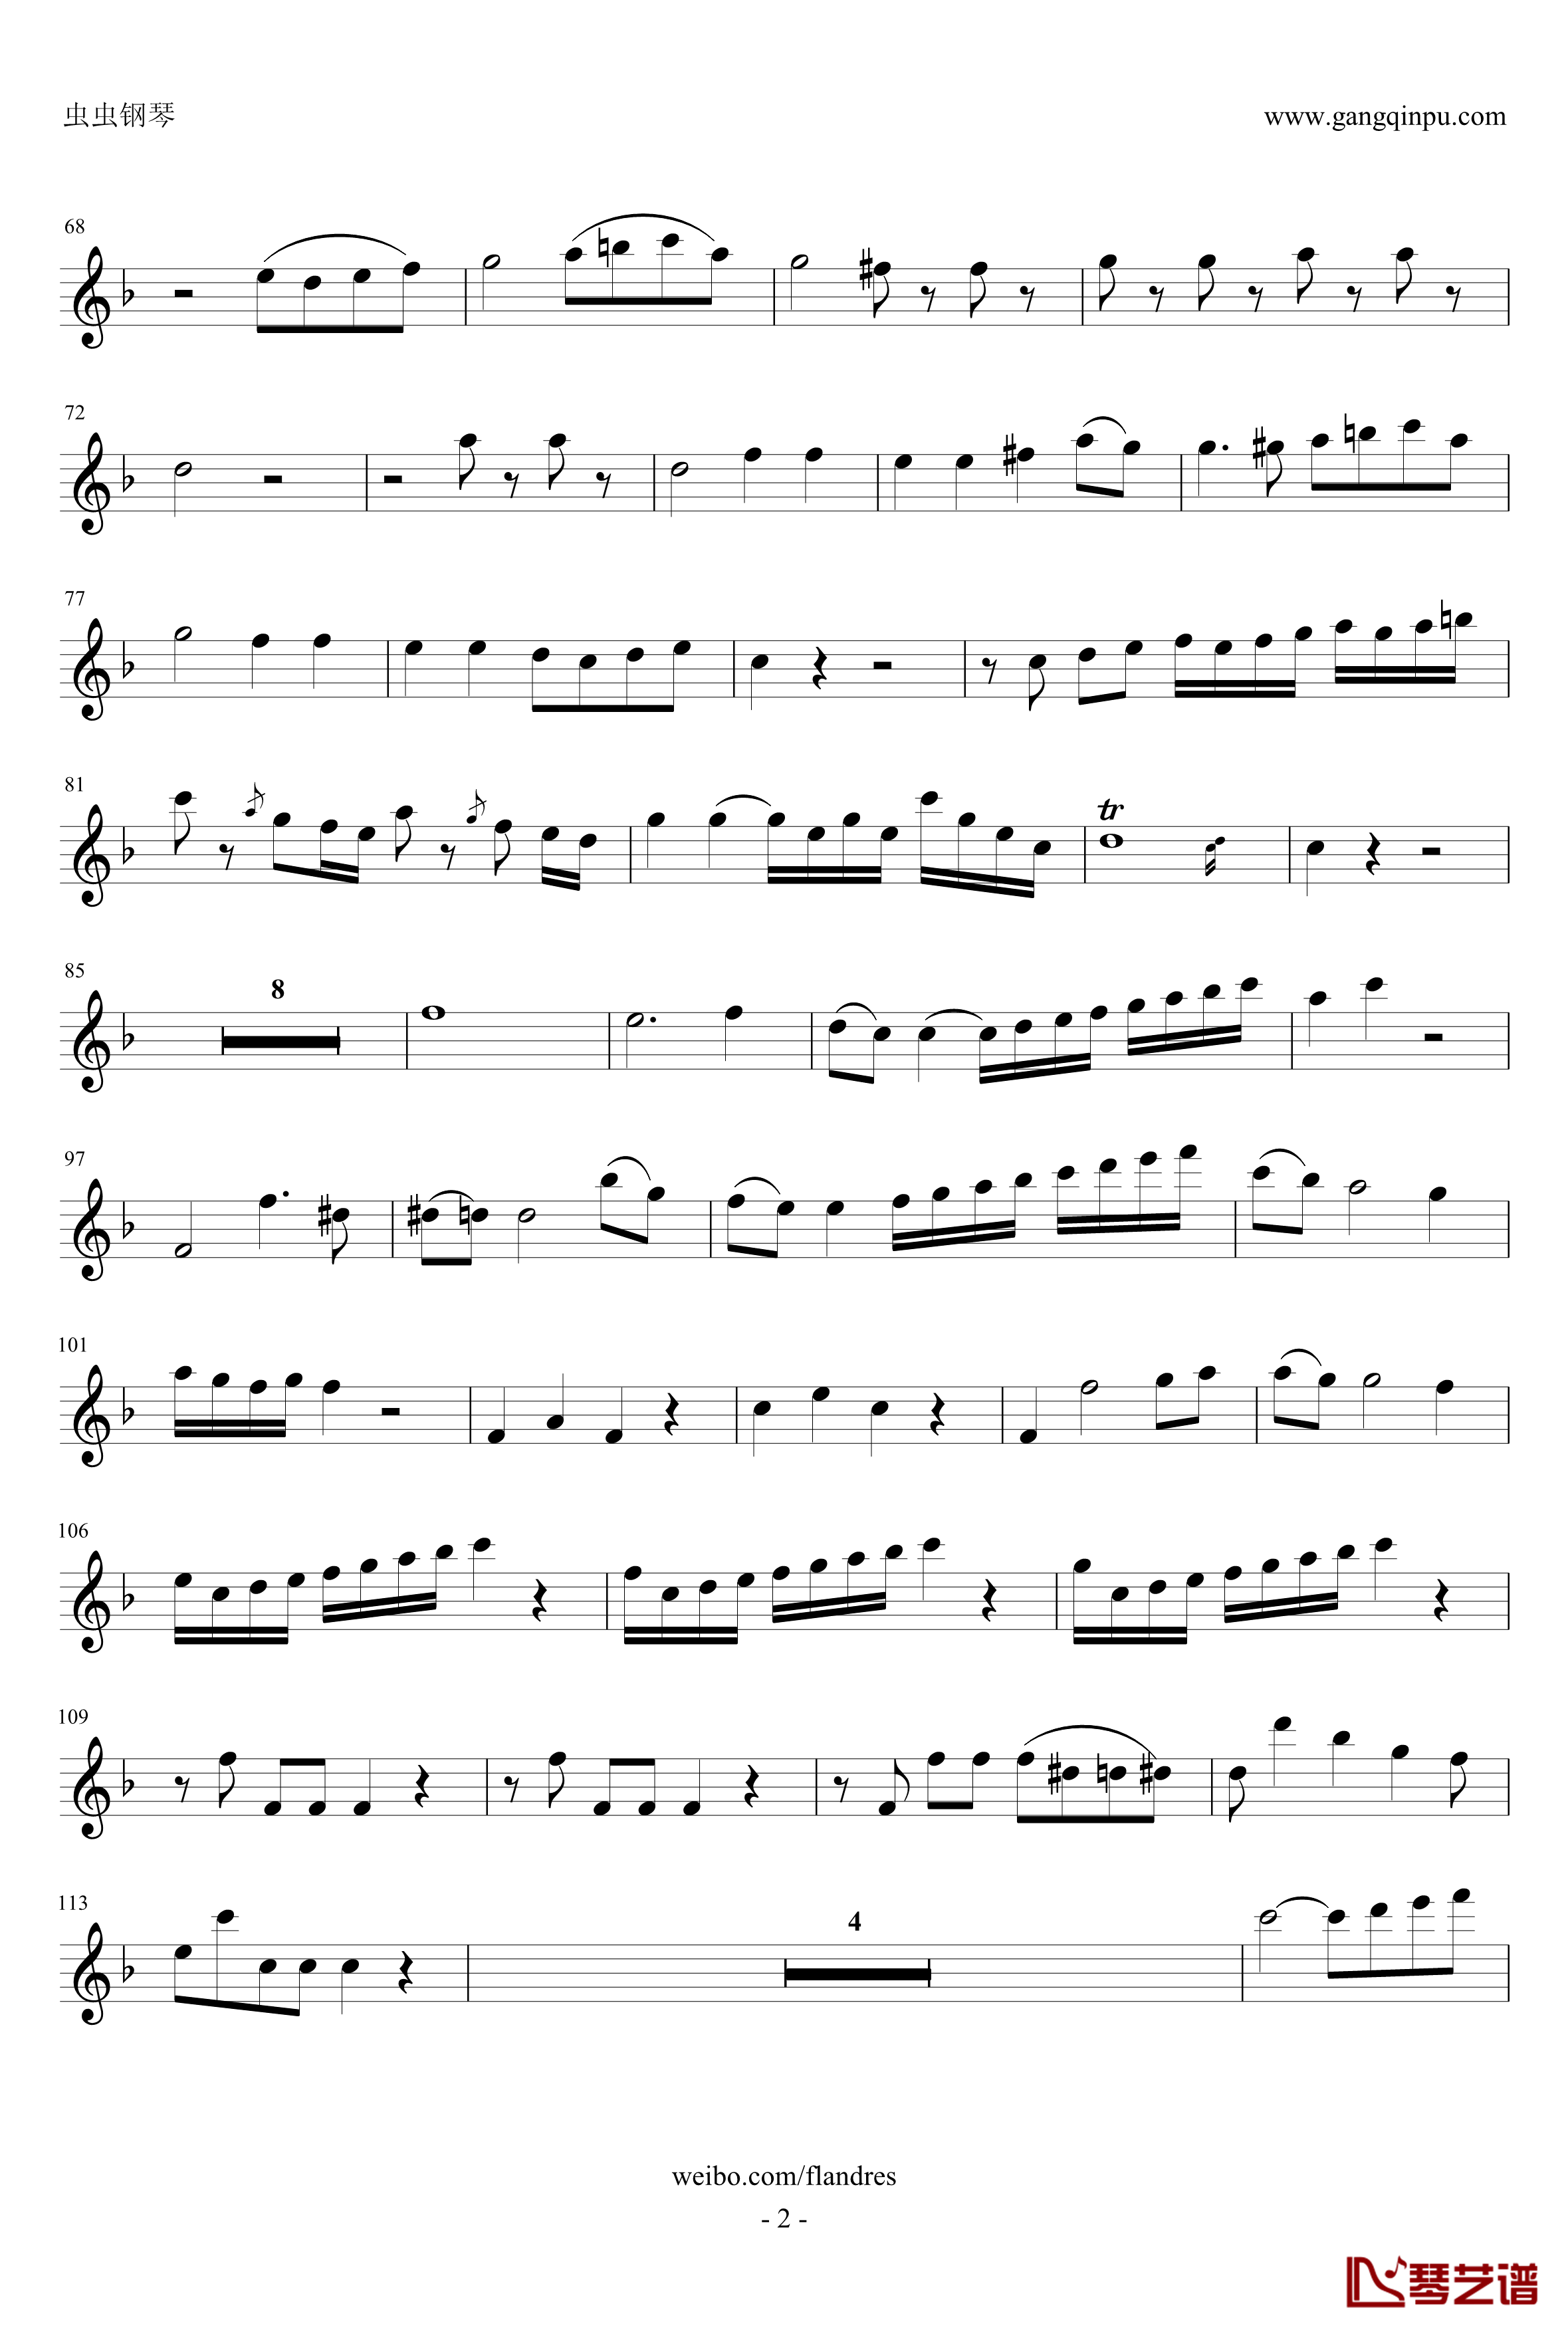 降E大调圆号协奏曲钢琴谱-bB单簧管版-莫扎特2